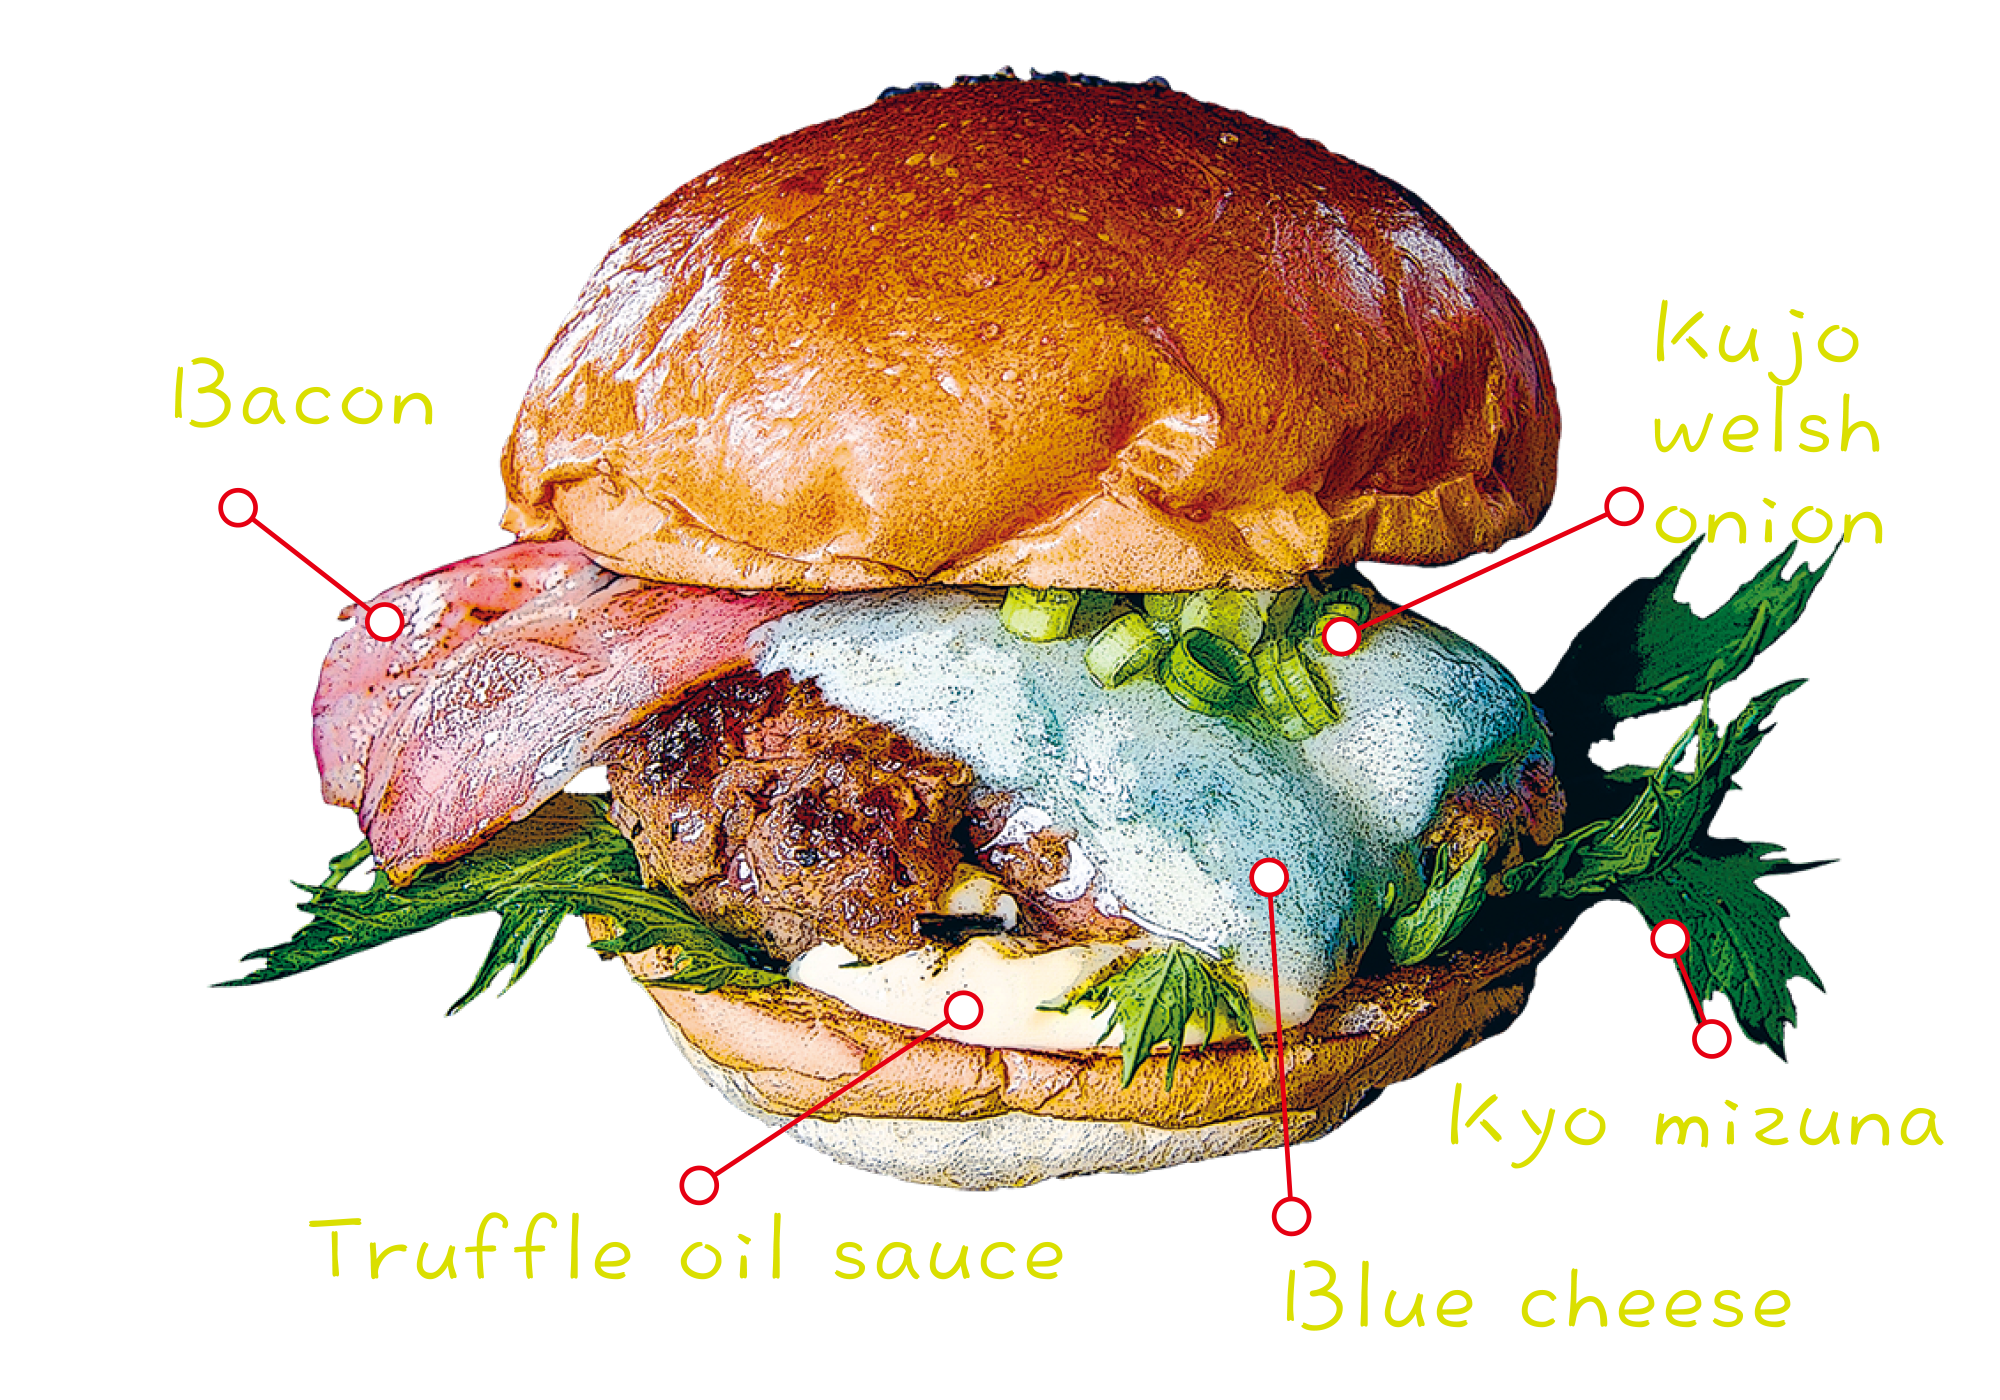 Blue cheese burger